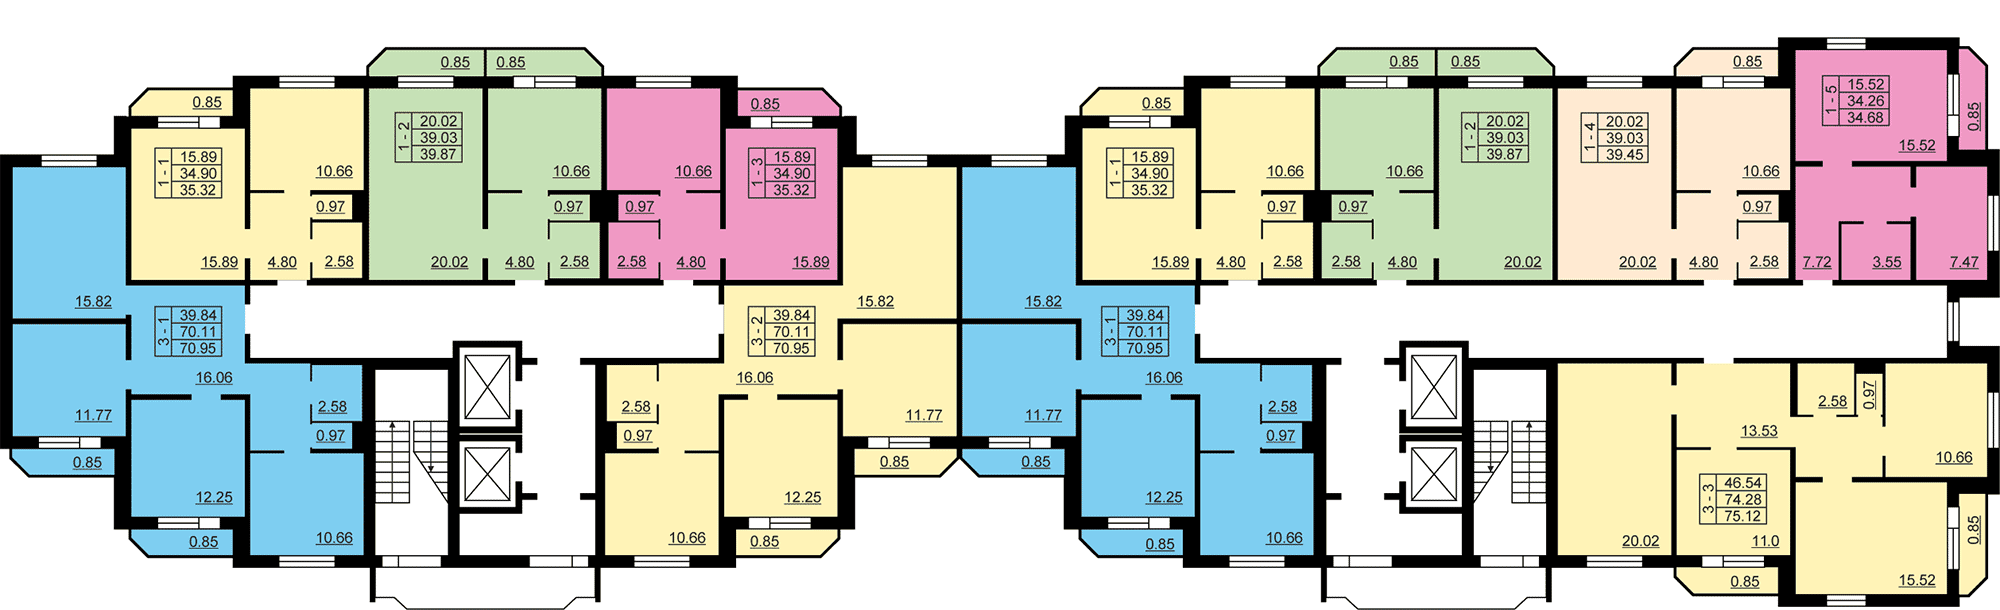 схема планировки дома 137 серия